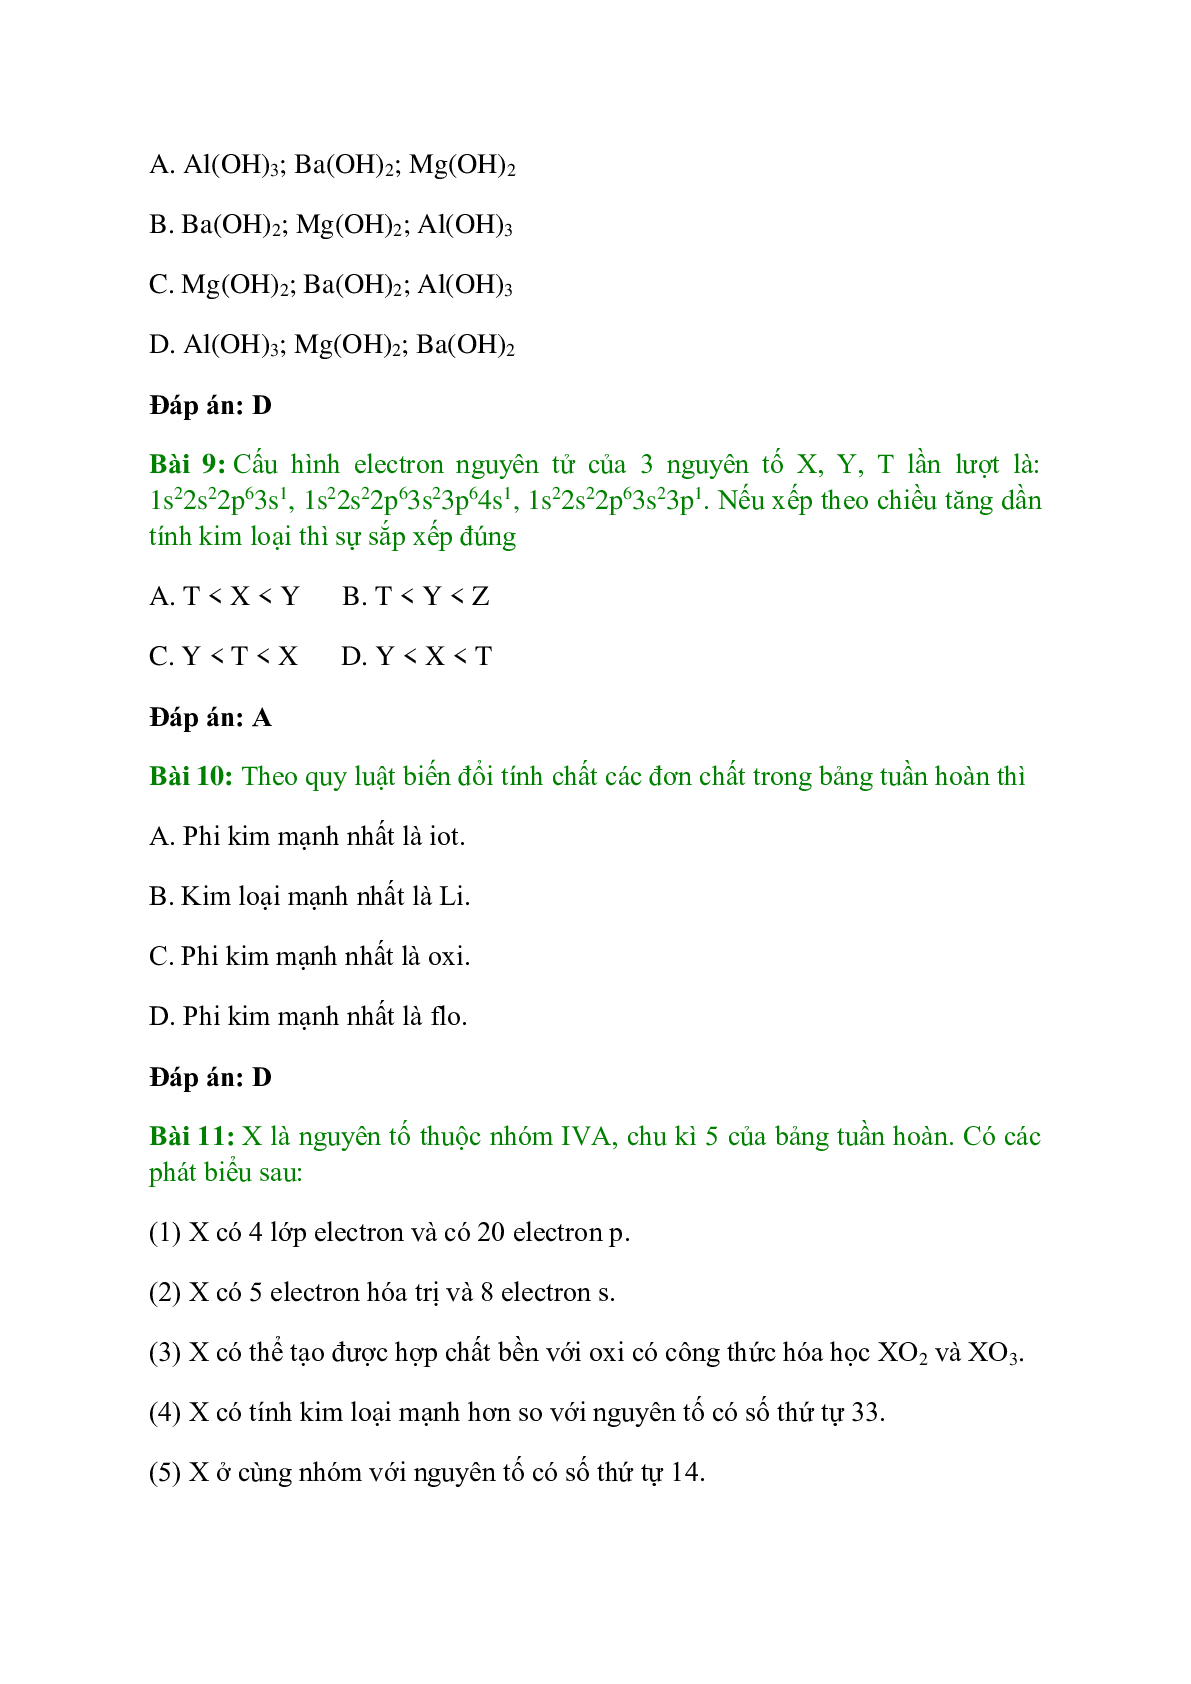 Trắc nghiệm Ý nghĩa của bảng tuần hoàn các nguyên tố hóa học có đáp án - Hóa học 10 (trang 4)